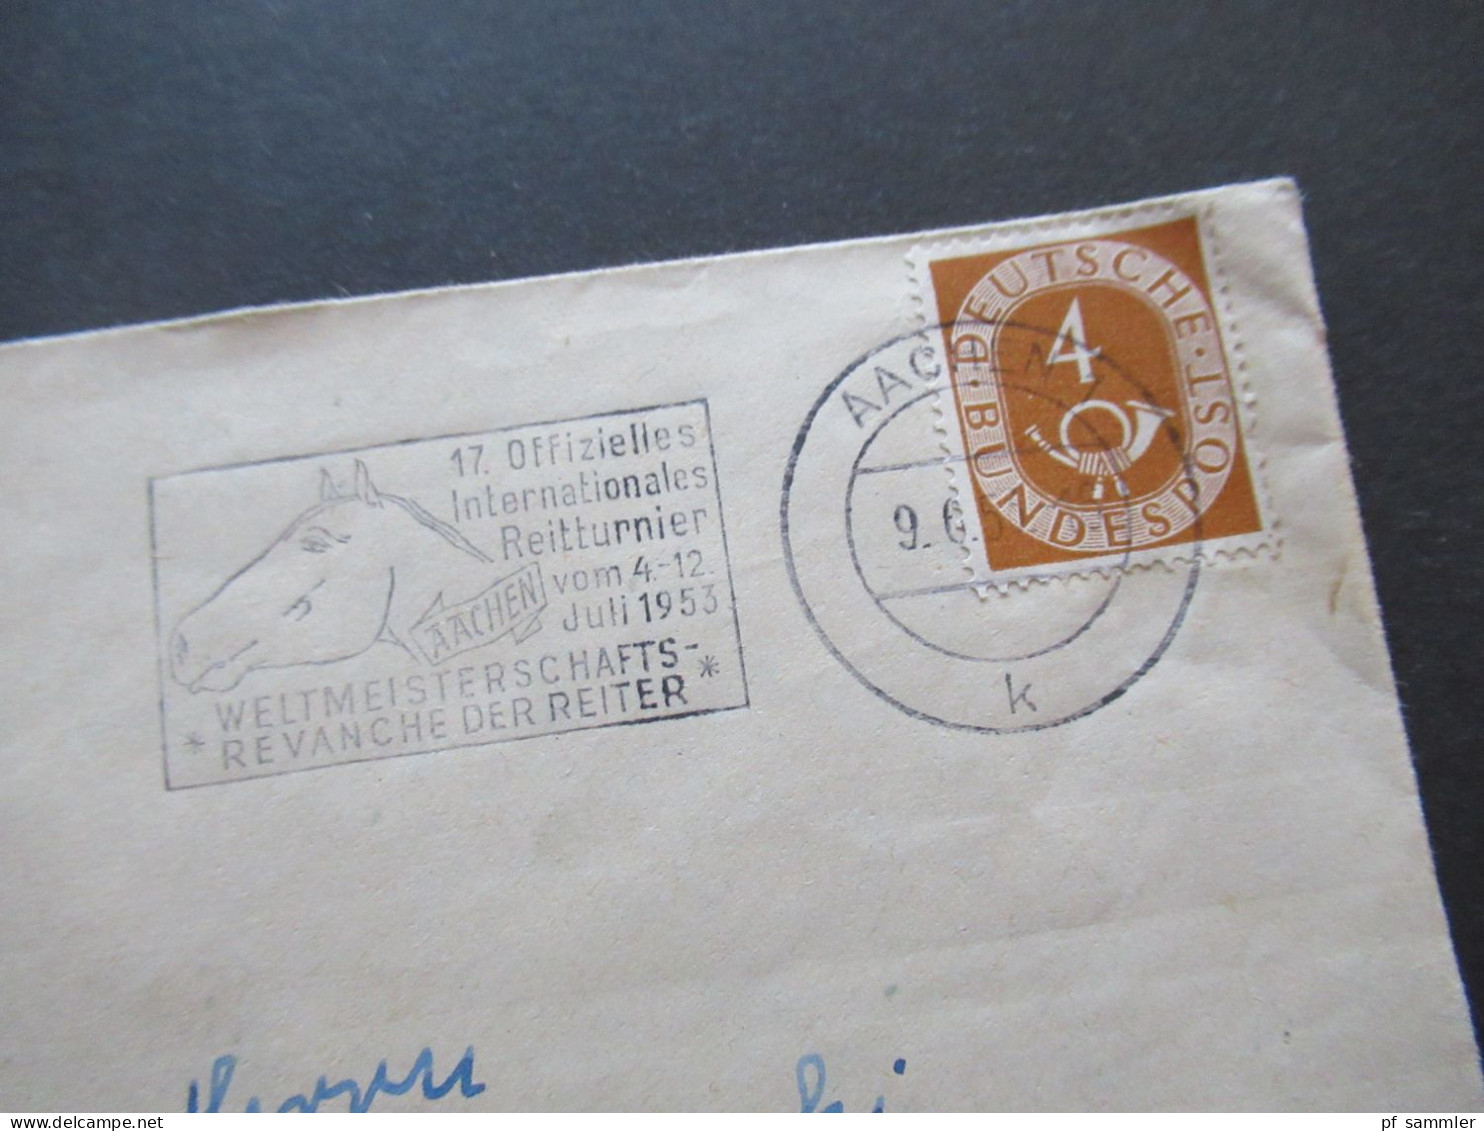 BRD 1951 Posthorn Nr.124 EF Mit MS Aachen 17. Offizielles Int. Reitturnier Weltmeisterschafts Revanche Der Reiter - Briefe U. Dokumente